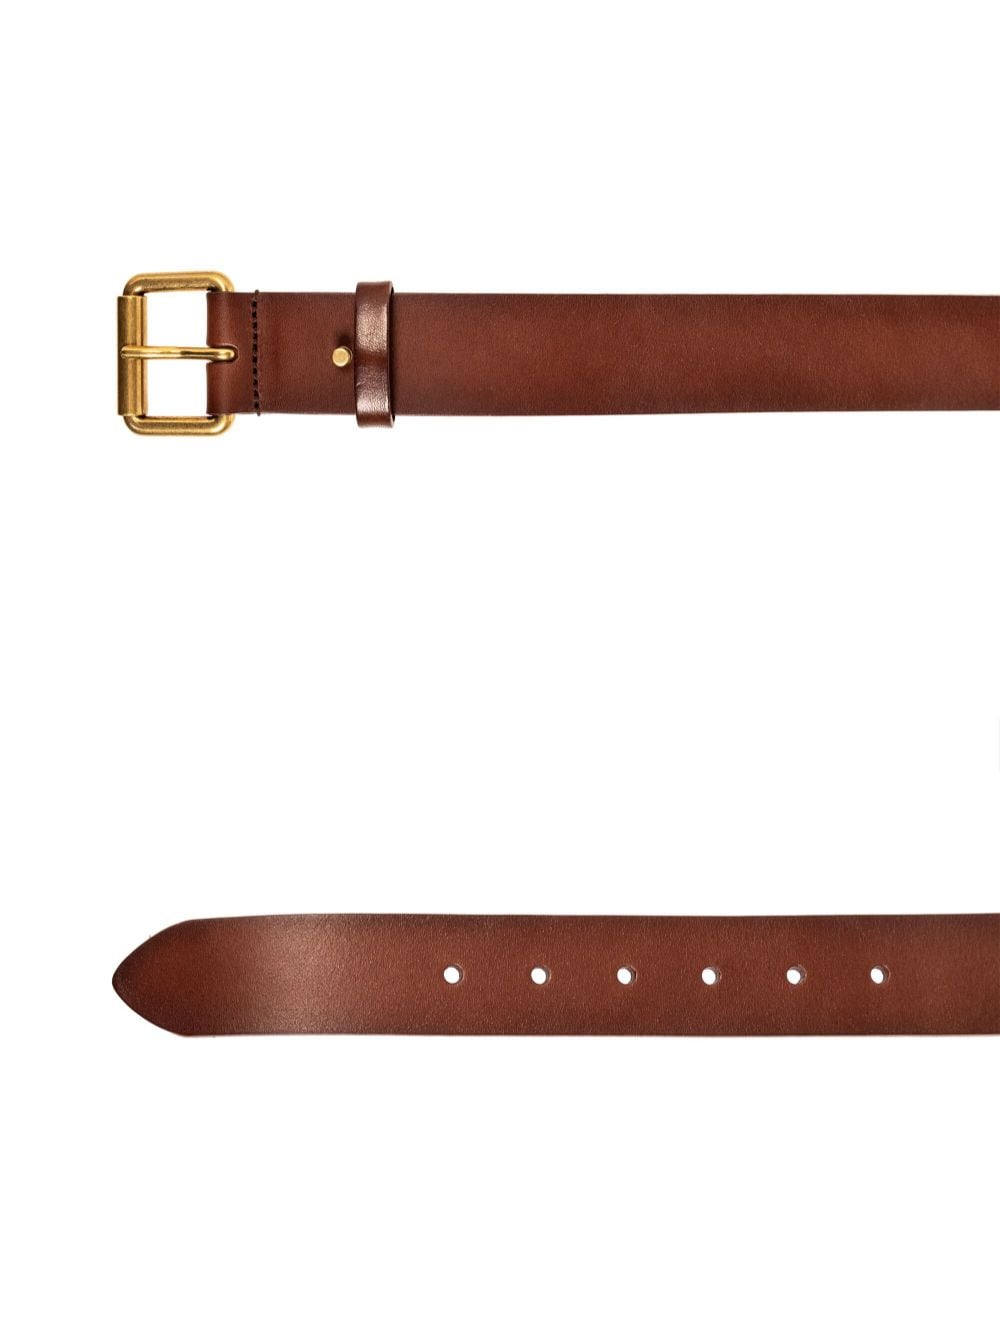 Saint Laurent buckle leather belt - Bruin